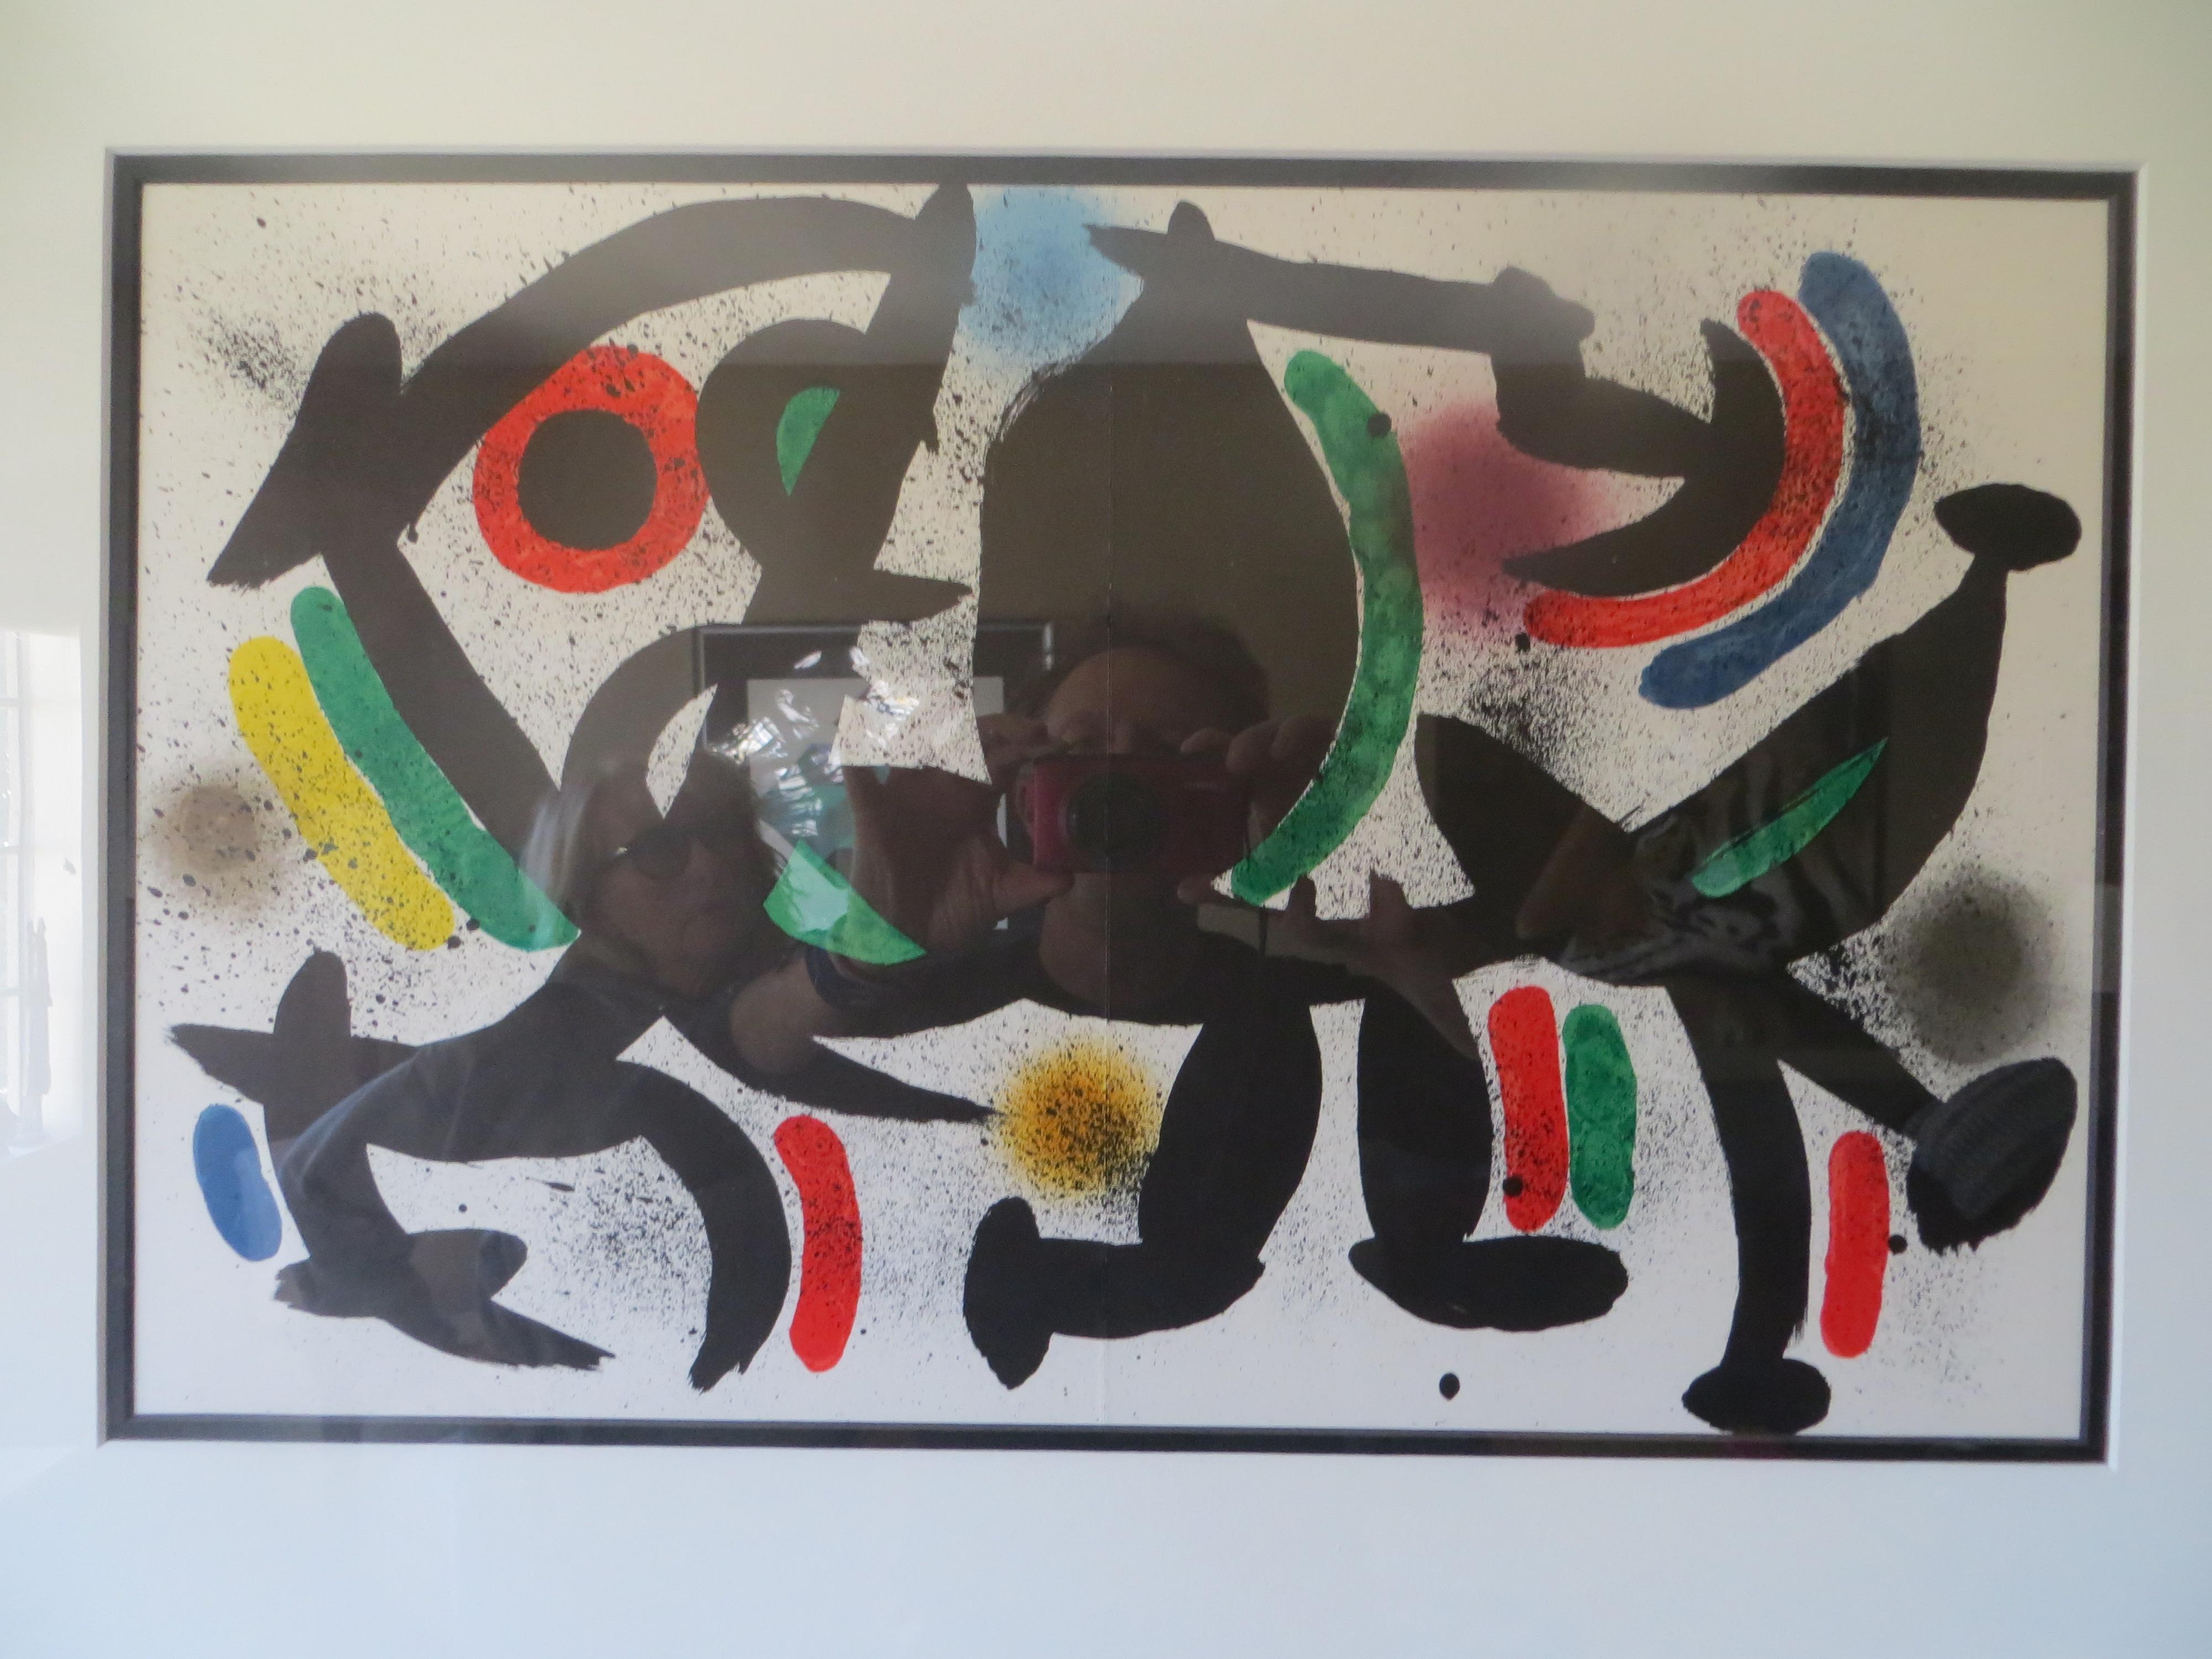 Dessiné par Joan Miro (espagnol, 1893 - 1983)
Sans titre, non signé et non numéroté 
Lithographie offset sur papier, imprimée et éditée par Mourlot, Paris, 1972 
Joan Miro est un peintre, sculpteur et céramiste catalan né à Barcelone. Un musée